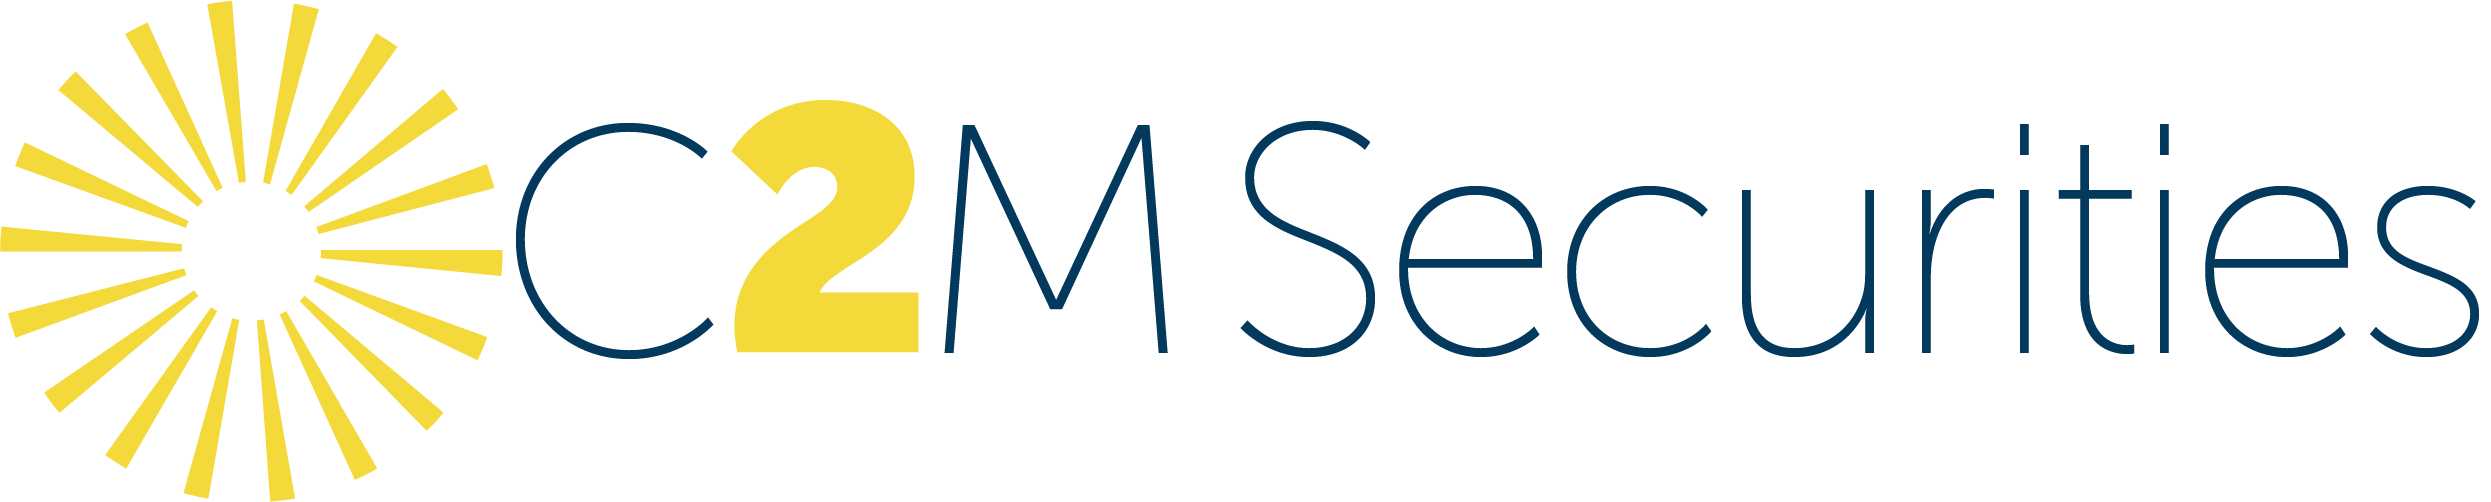 C2MSecurities Logo